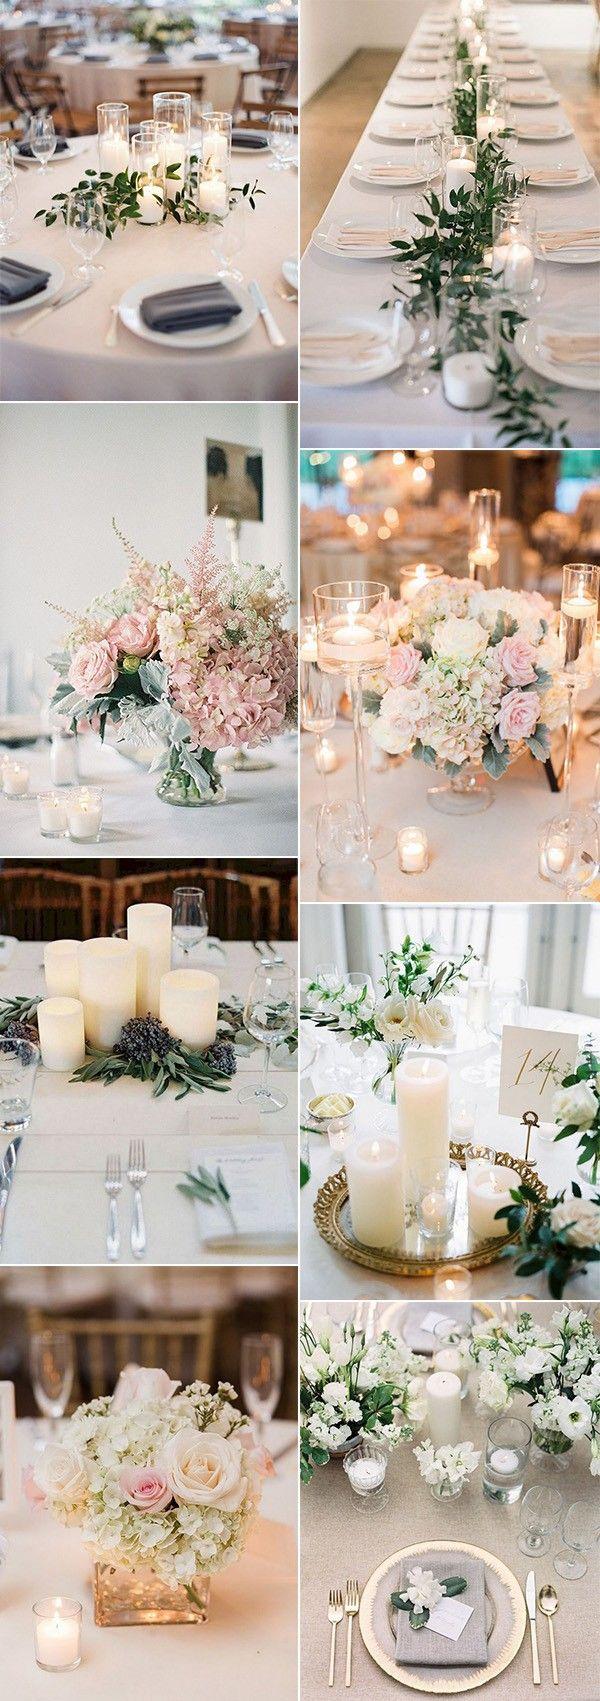 زفاف - 20 Elegant Wedding Centerpieces With Candles For 2018 Trends